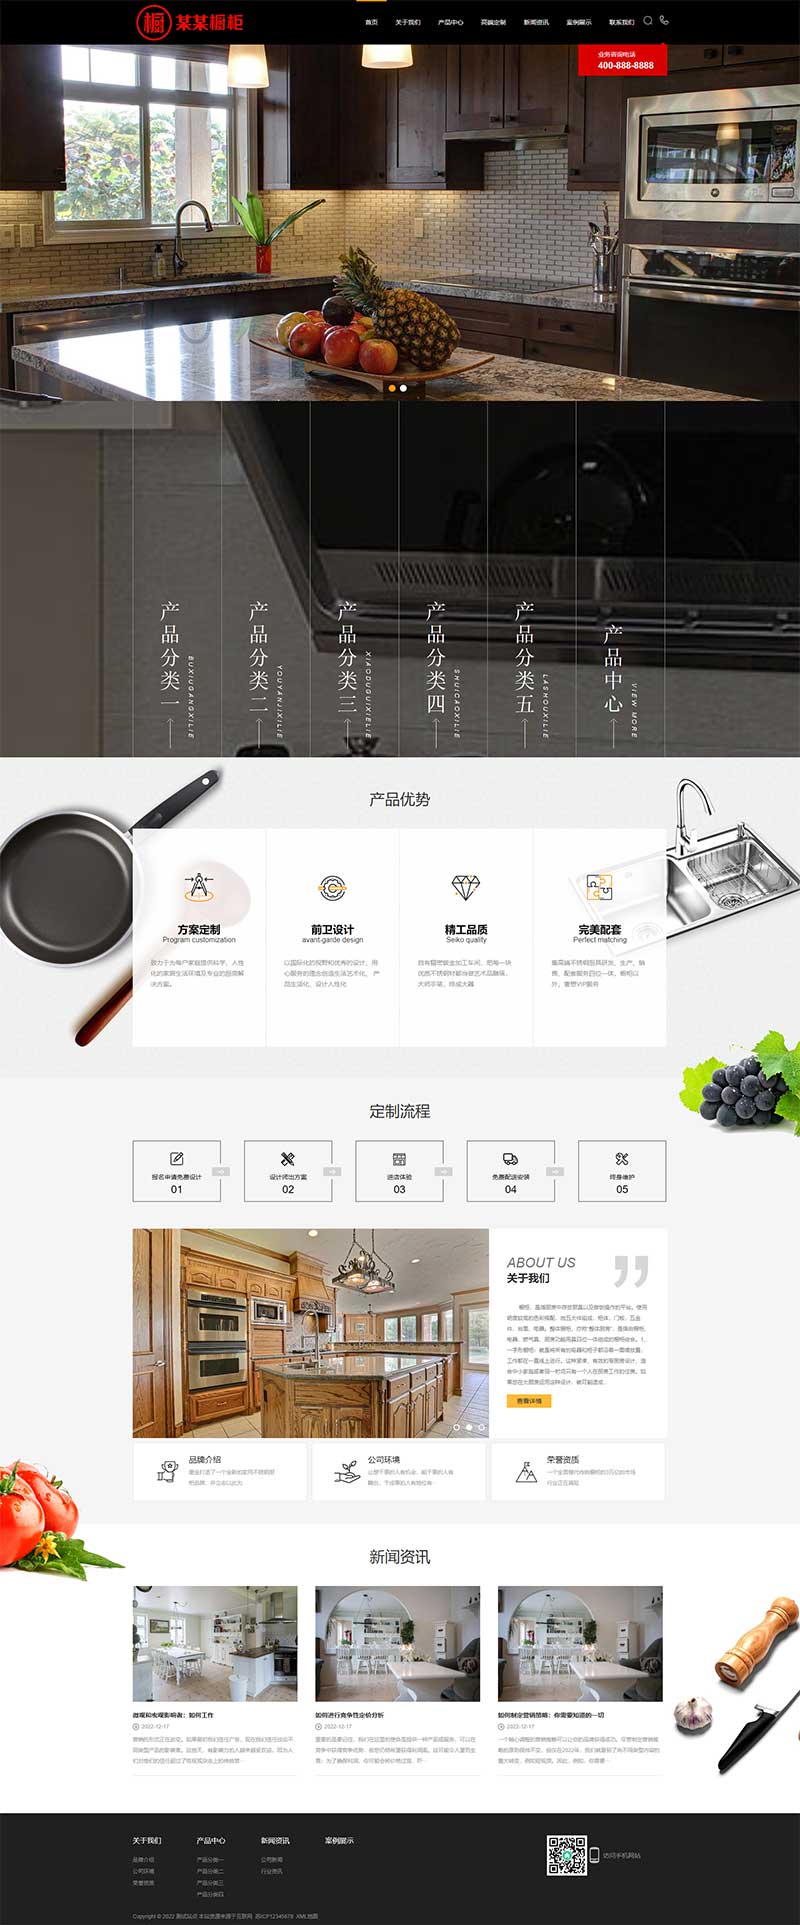 (PC+手机版)黑色精美高端橱柜厨具用品企业网站源码电脑端展示图片